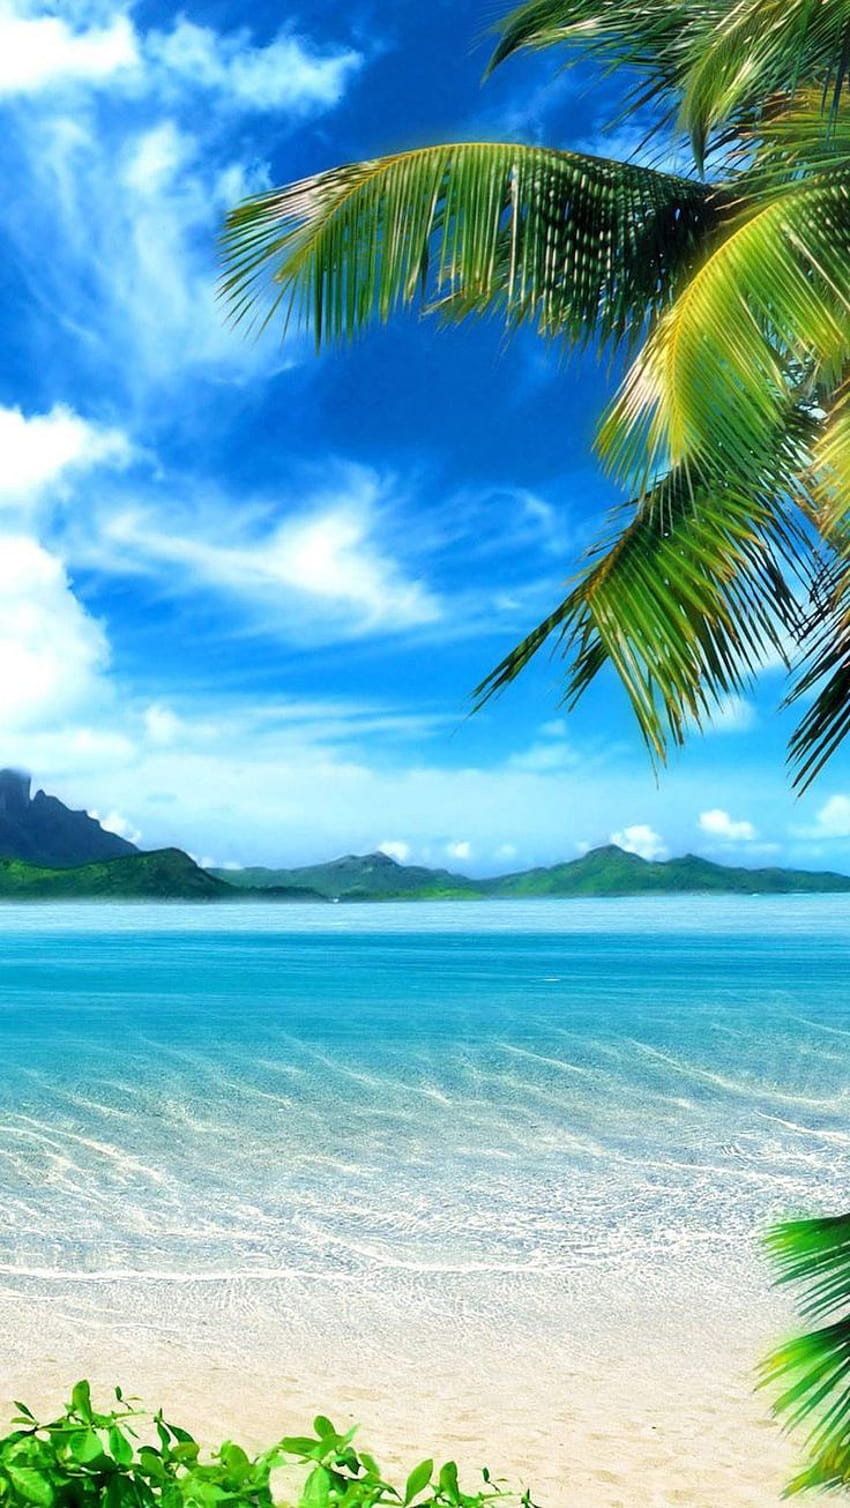 Beach iPhone, summer water landscape iphone HD phone wallpaper